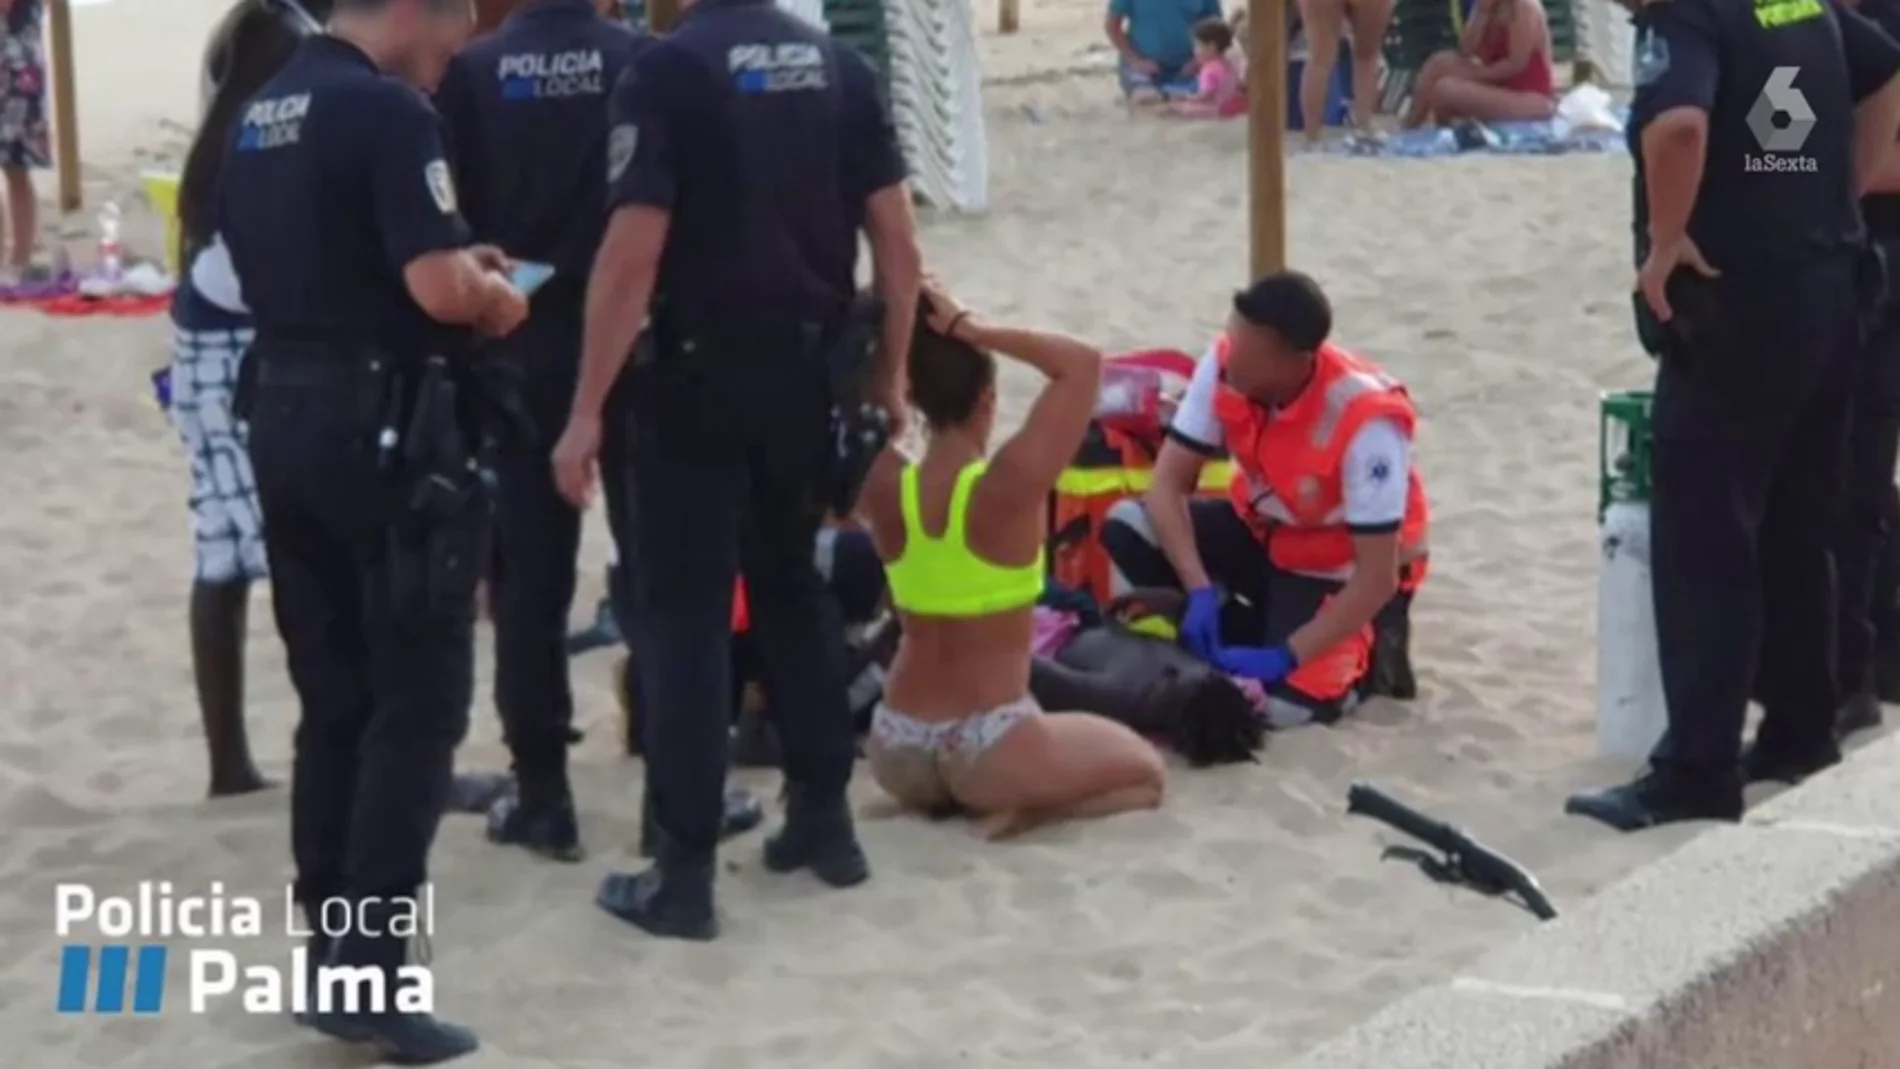 El pequeño rescatado por una socorrista en una playa de Palma: "Pensaba que no me ibas a rescatar porque soy negro"